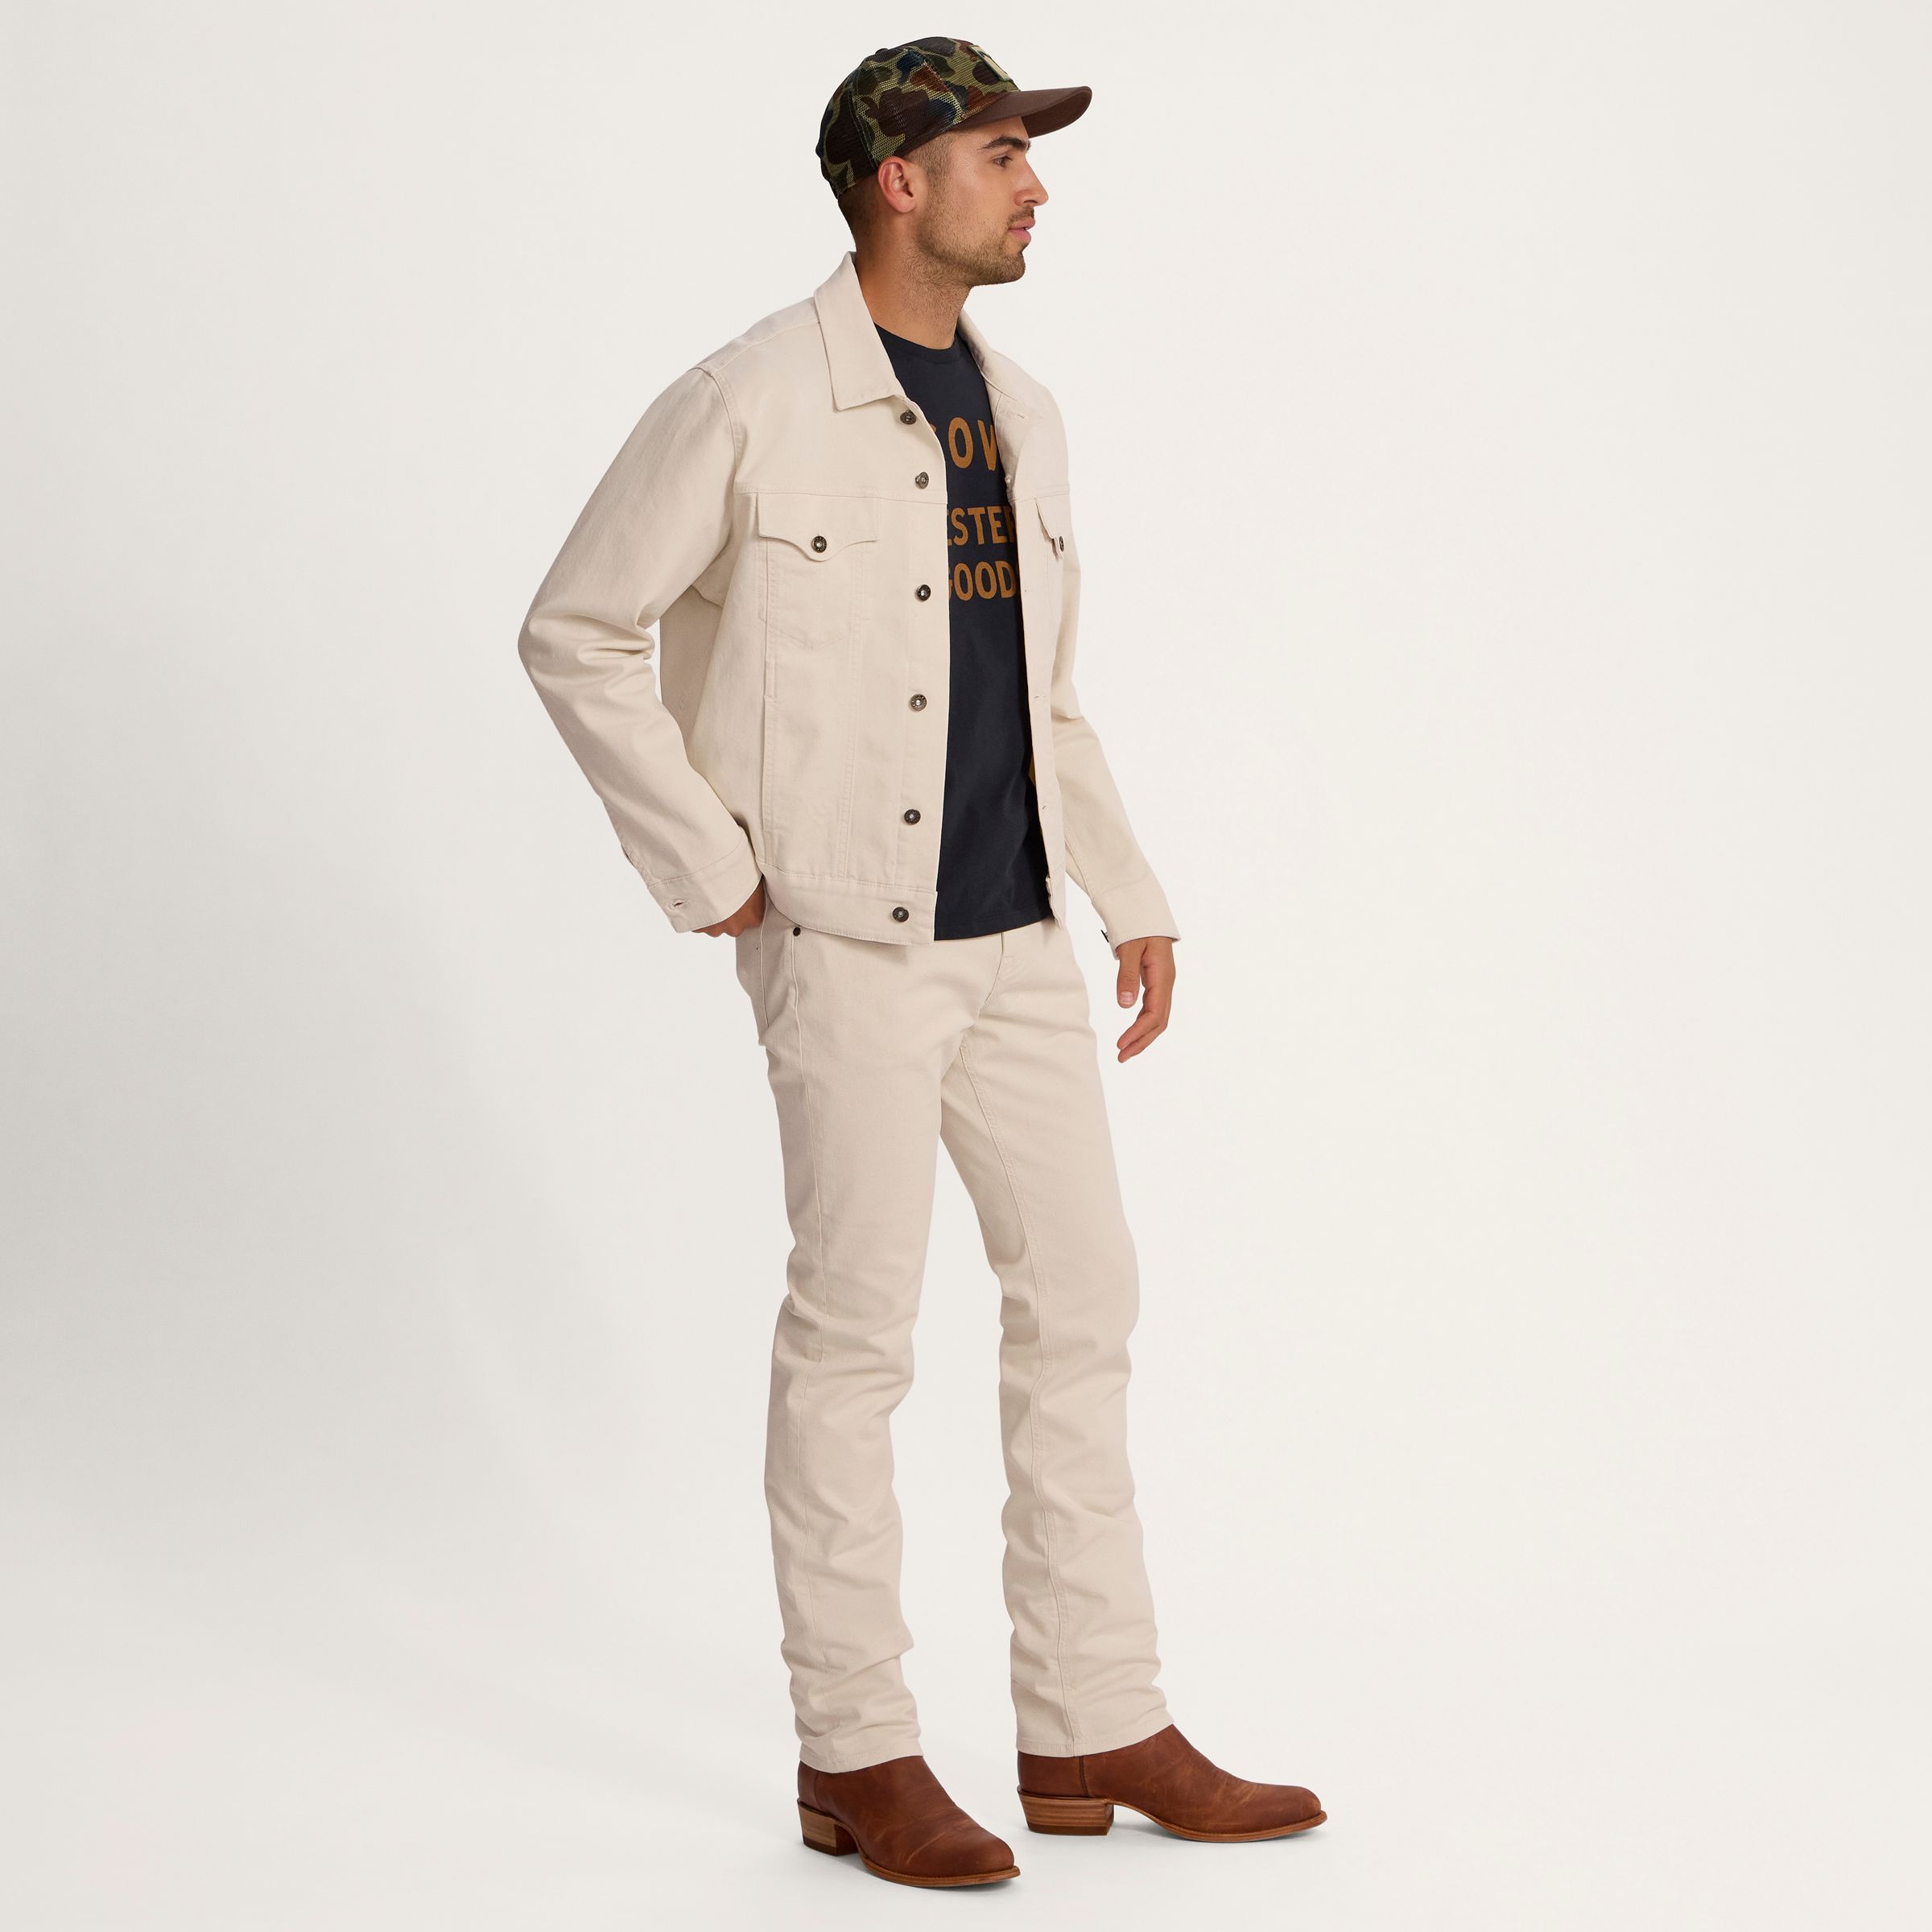 Men's Western Jean Jacket | Men's Twill Trucker Jacket - Natural